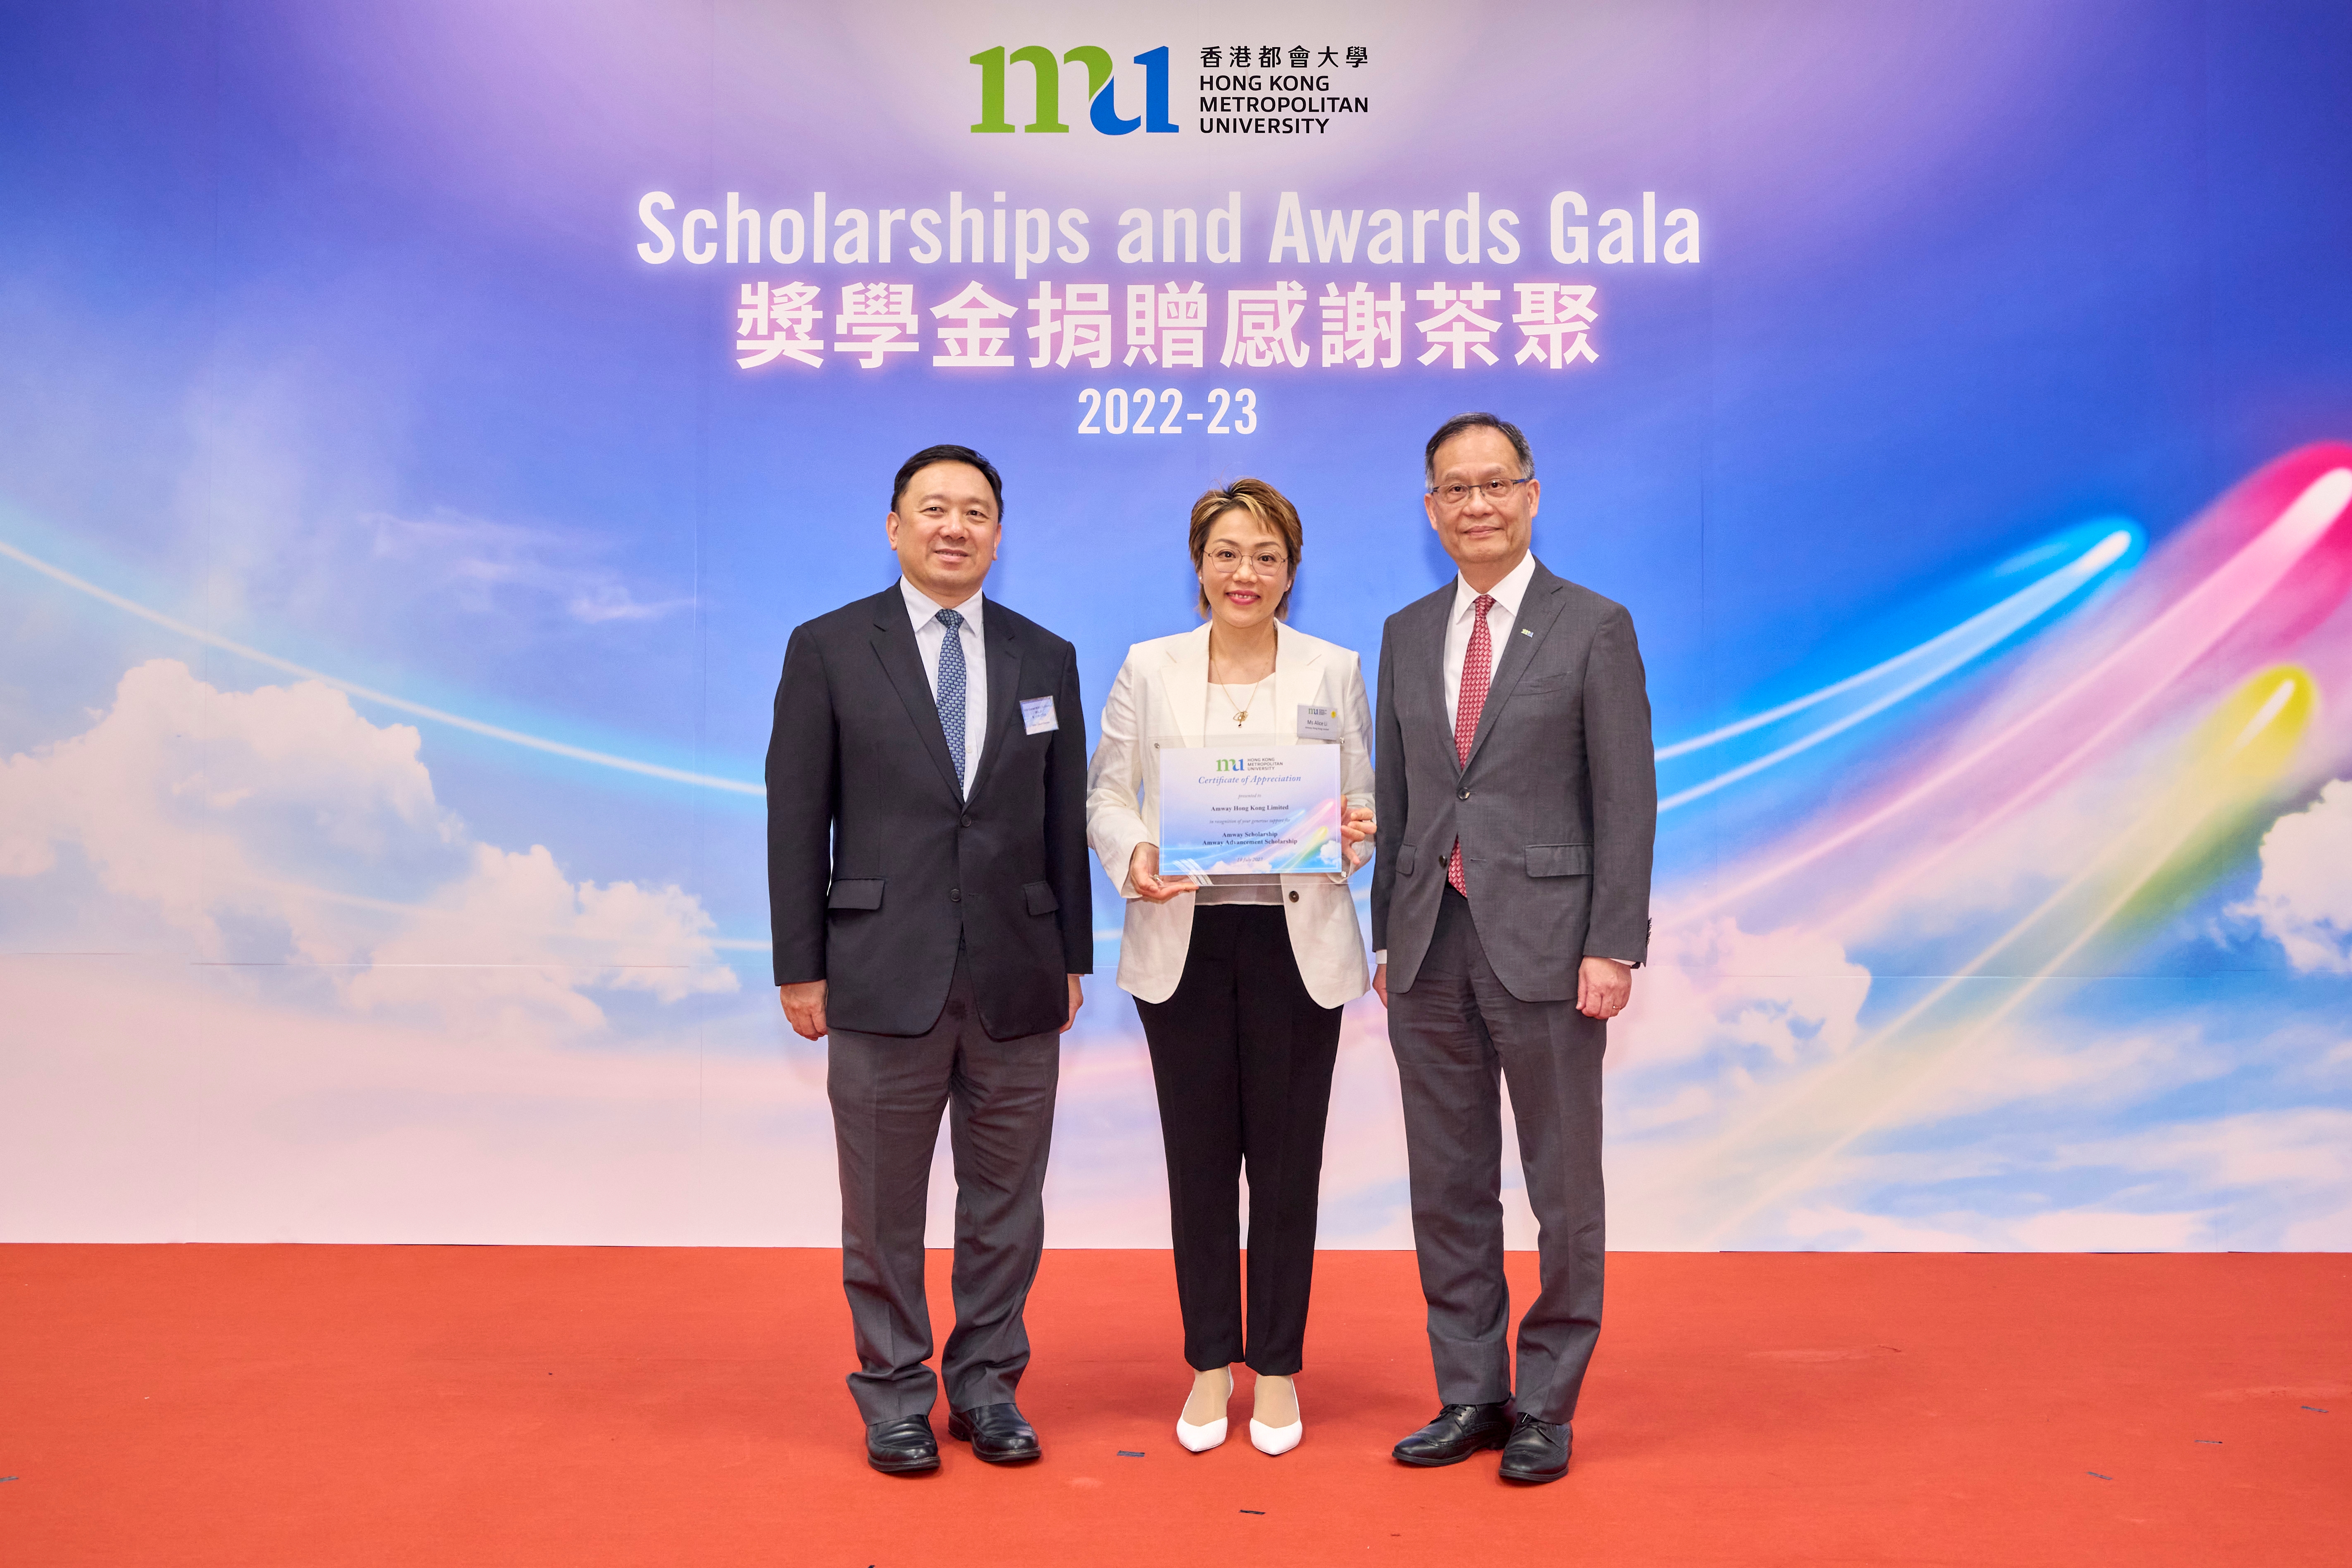 Amway (Hong Kong) Attended the Hong Kong Metropolitan University Scholarships and Awards Gala